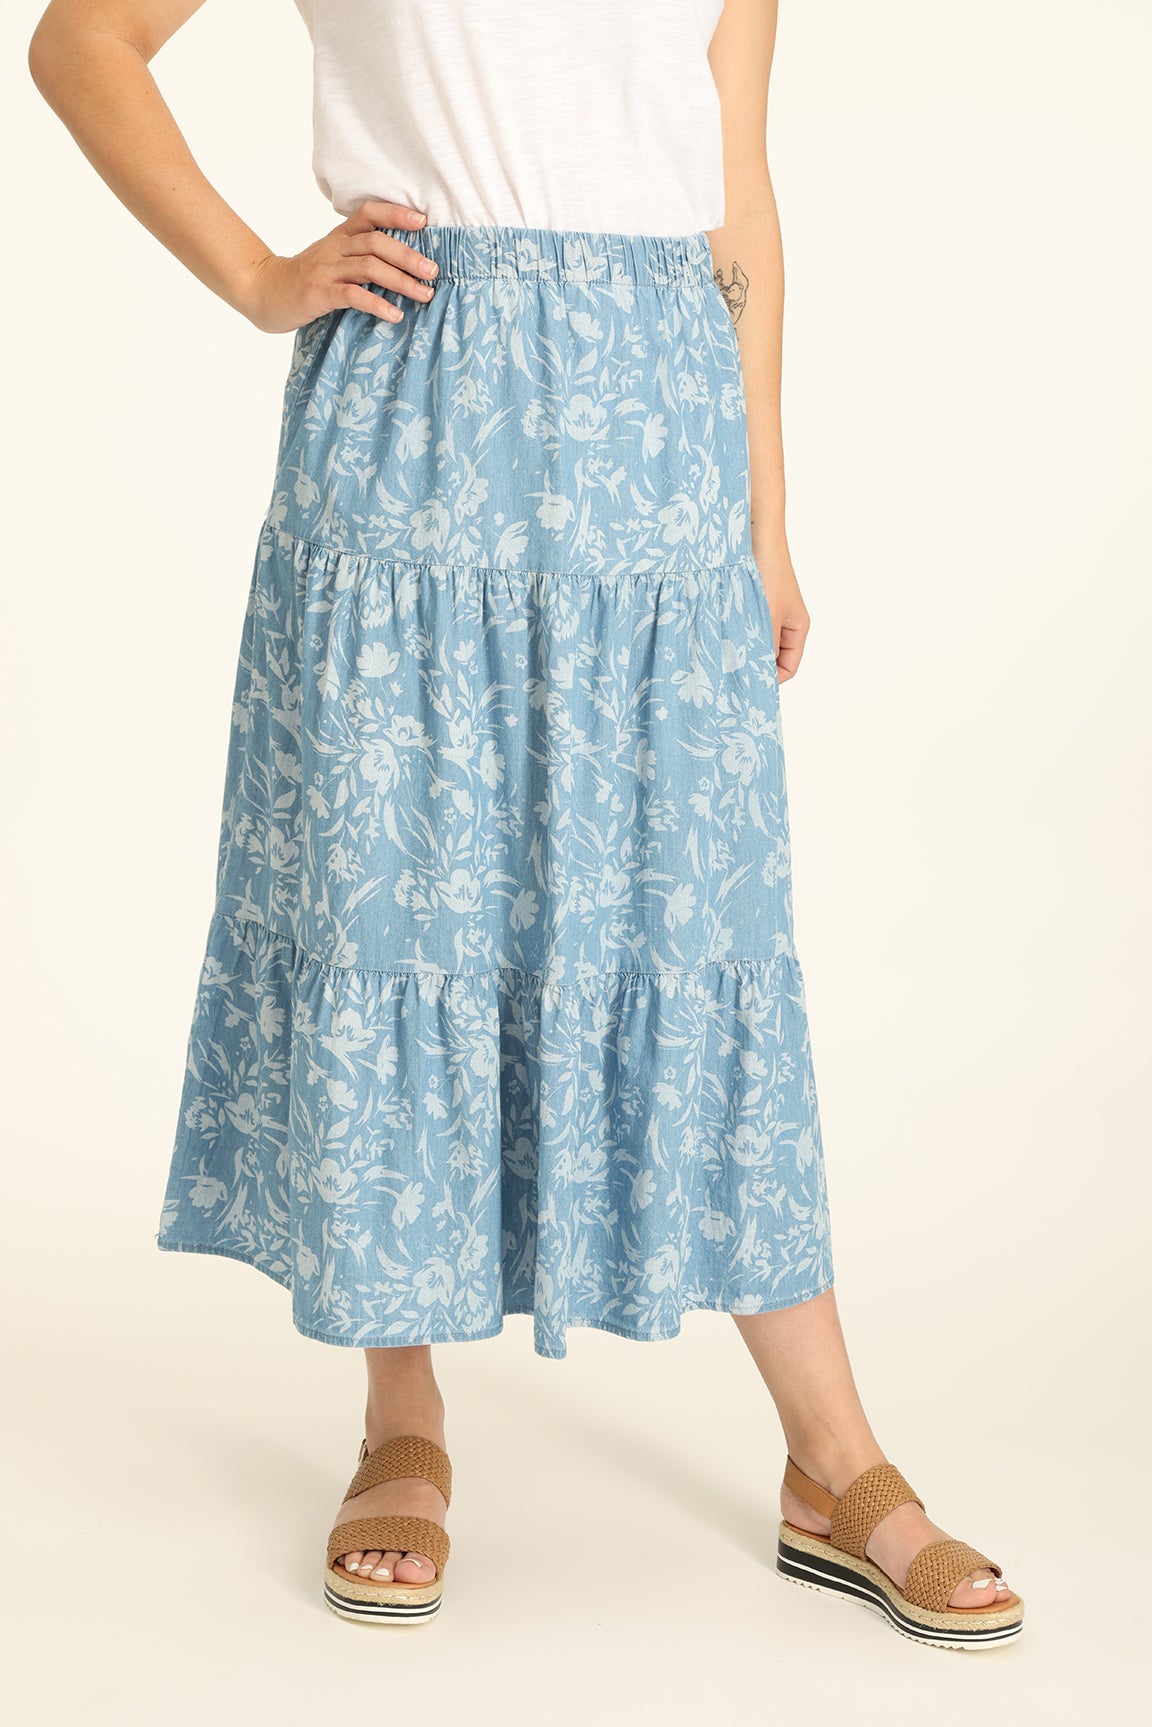 Chambray Skirt in Blue | Caroline Eve